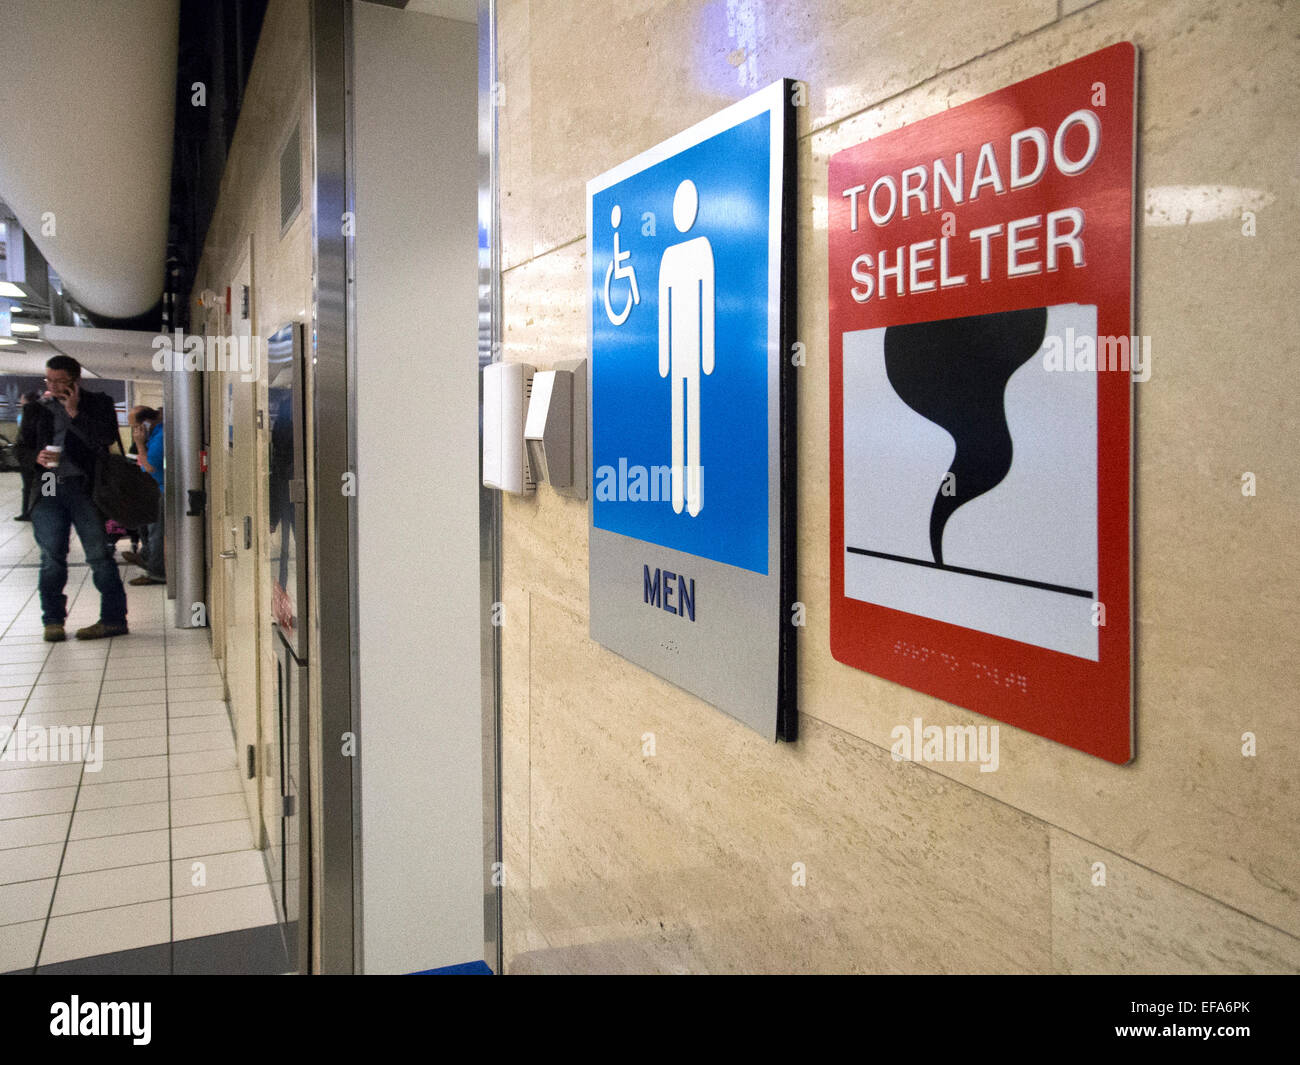 Eine öffentliche Toilette dient auch als ein Tornado Shelter am Flughafen Lambert-St. Louis in Missouri. Stockfoto